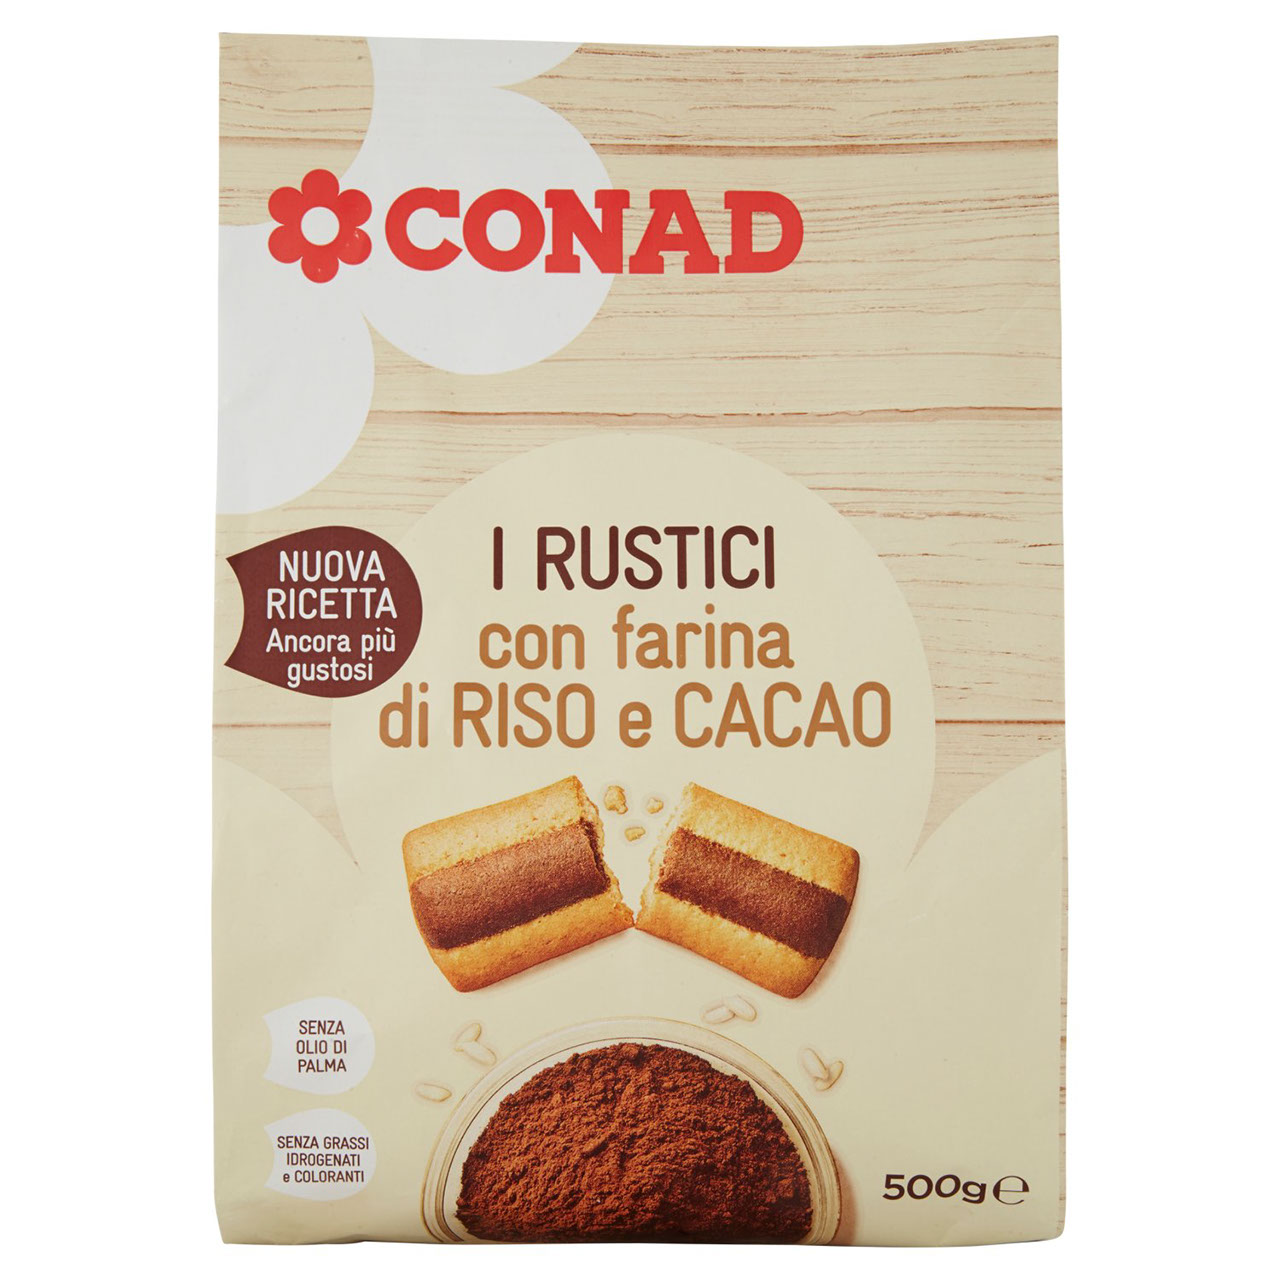 I Rustici con farina di Riso e Cacao 500 g Conad